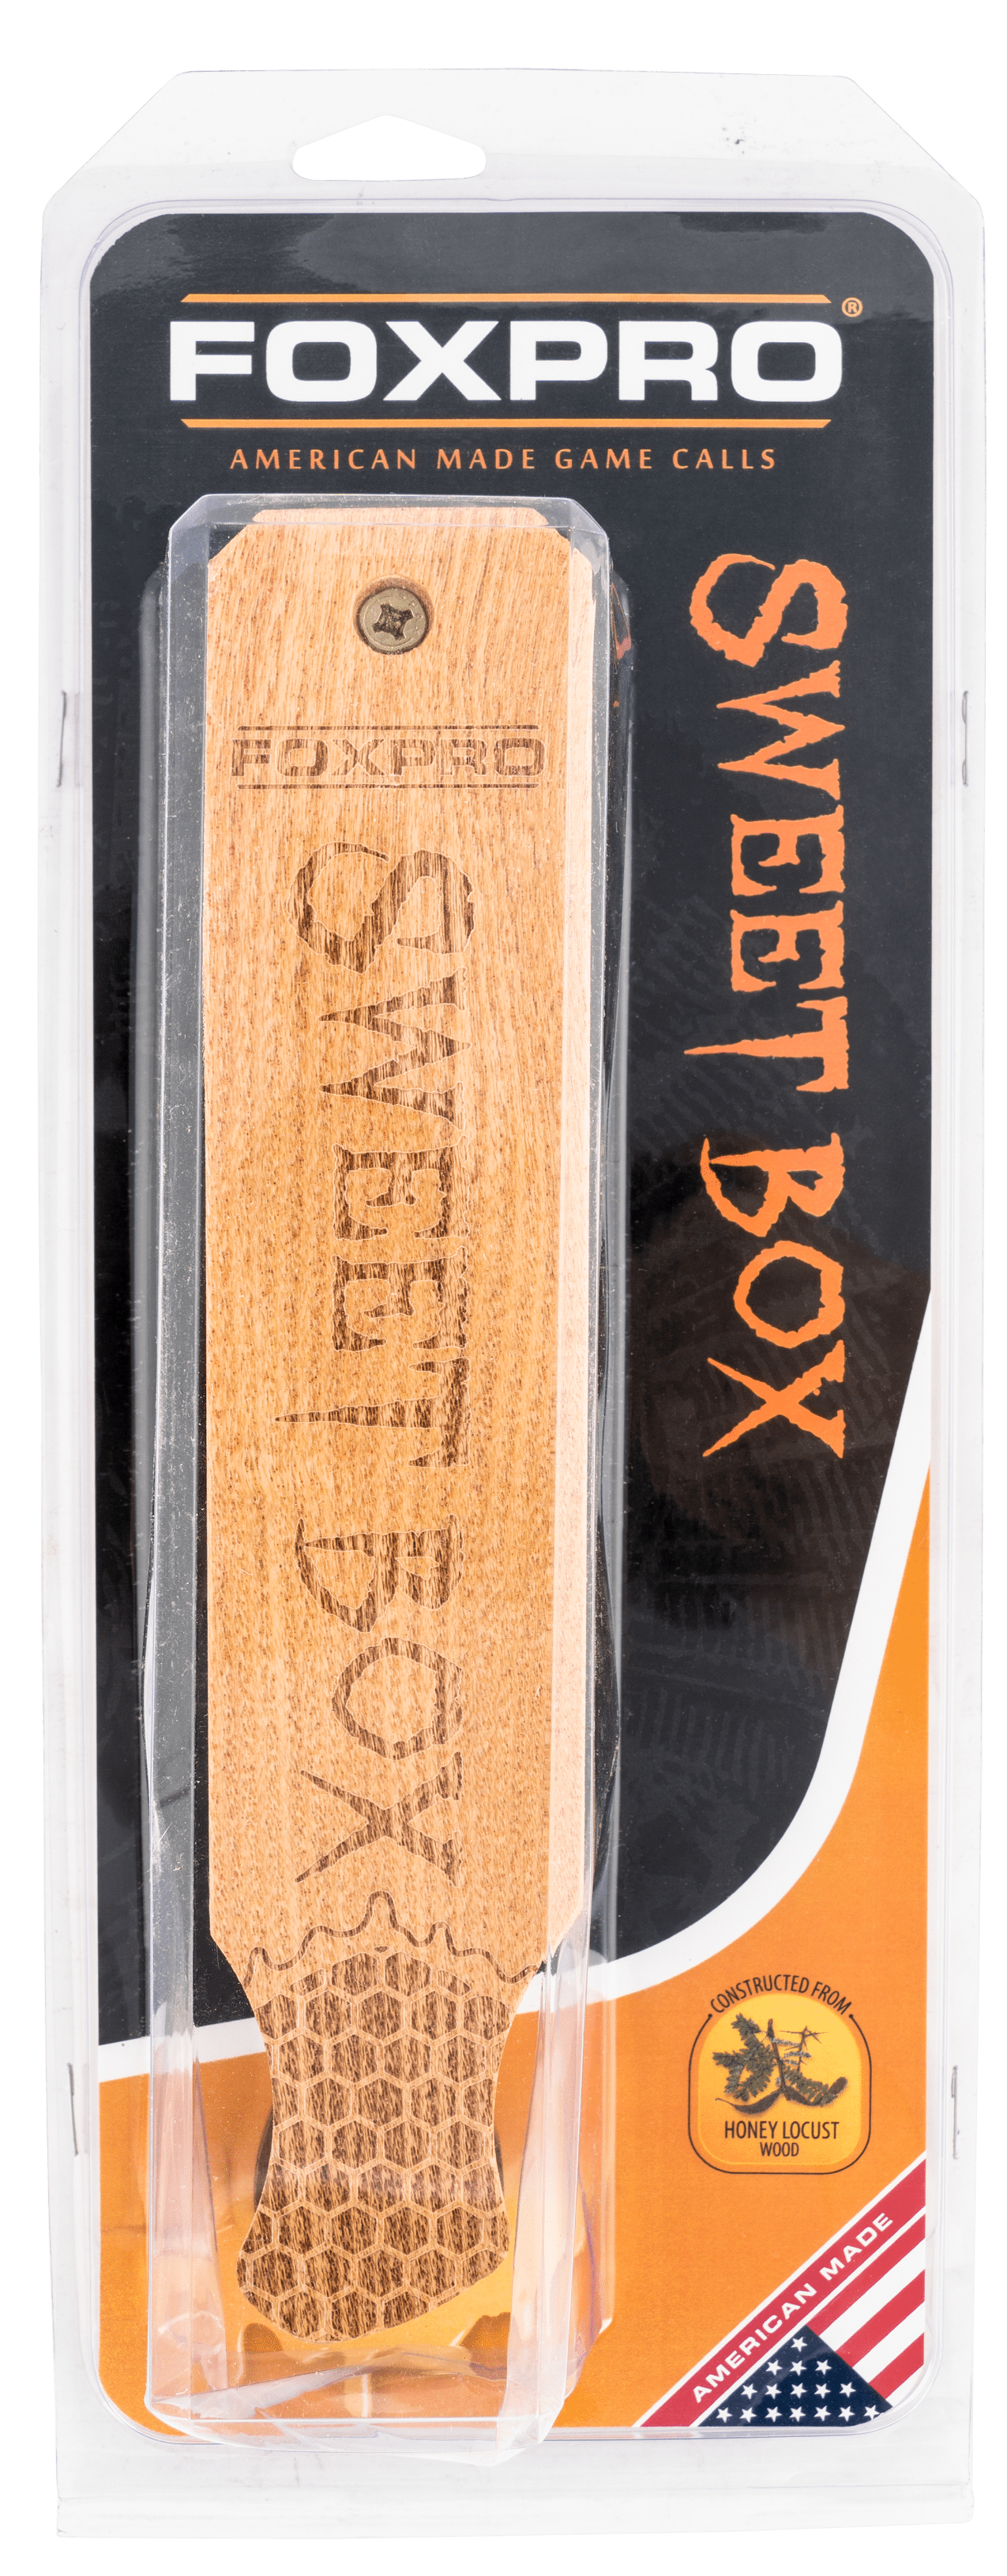 Foxpro Foxpro Sweet Box, Foxpro Swtbox          Sweet Box Tky Hunting